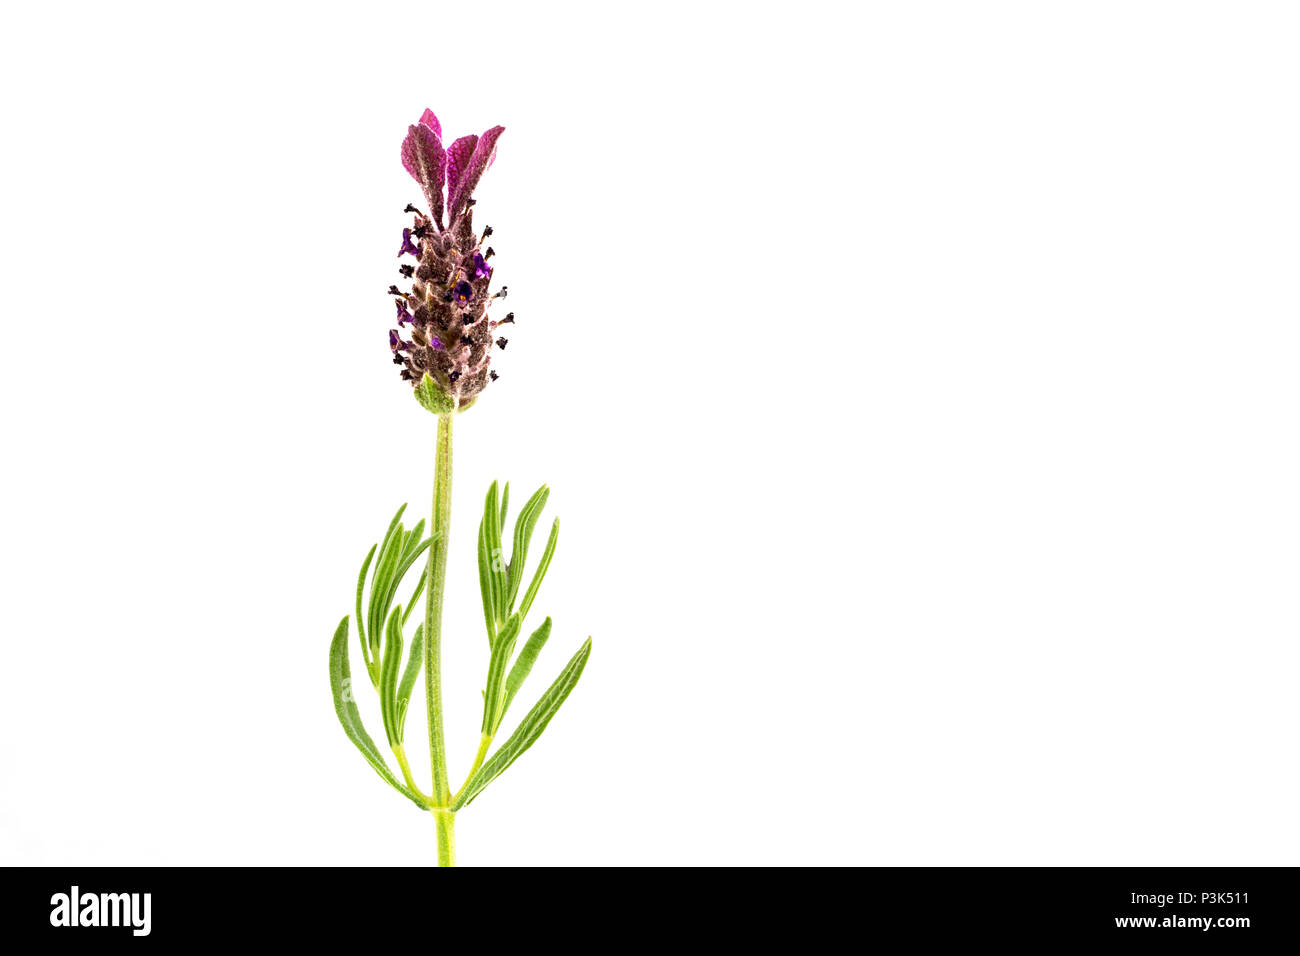 Beau portrait détaillé d'un lavandula flower isolated against white background Banque D'Images